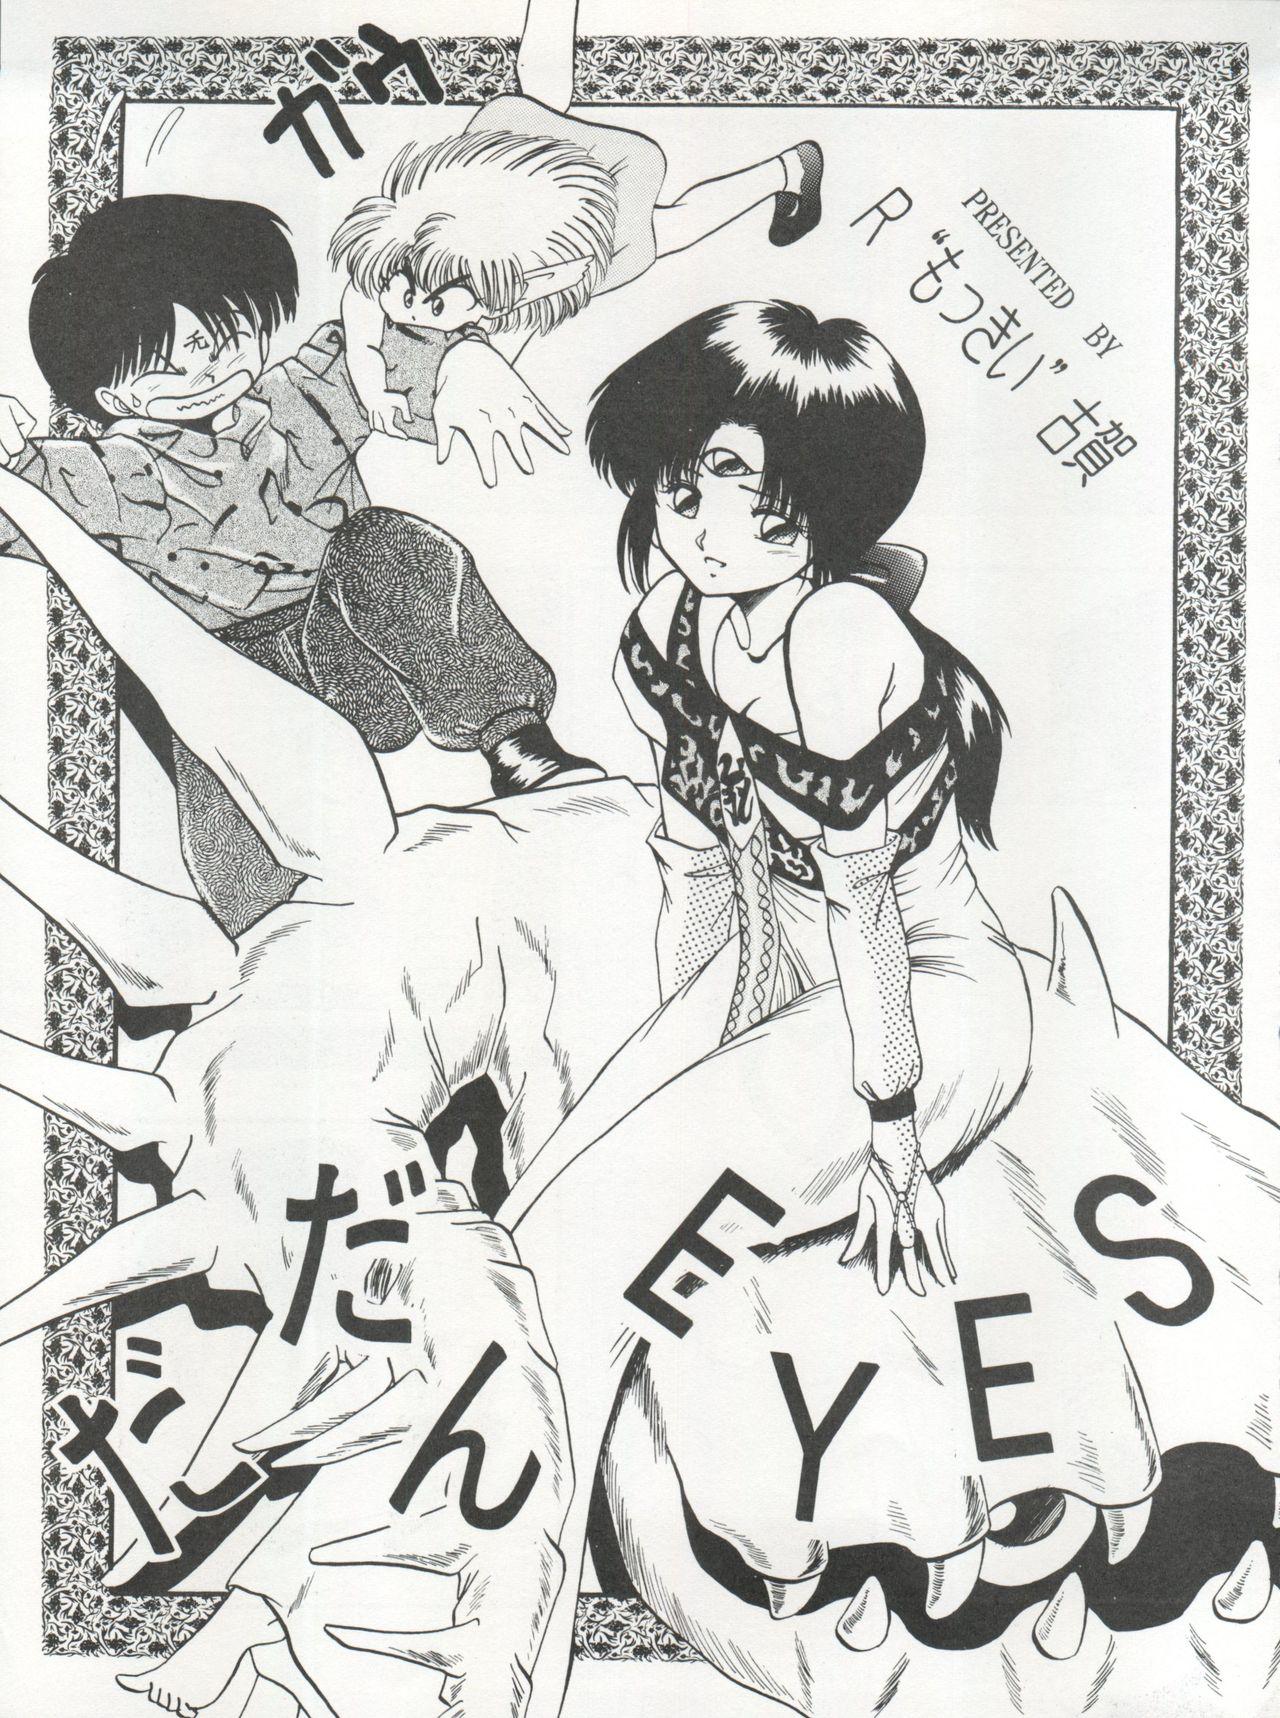 Amateur 逮捕されちゃうぞ - Fushigi no umi no nadia Youre under arrest Minky momo 3x3 eyes Celebrity Nudes - Page 11